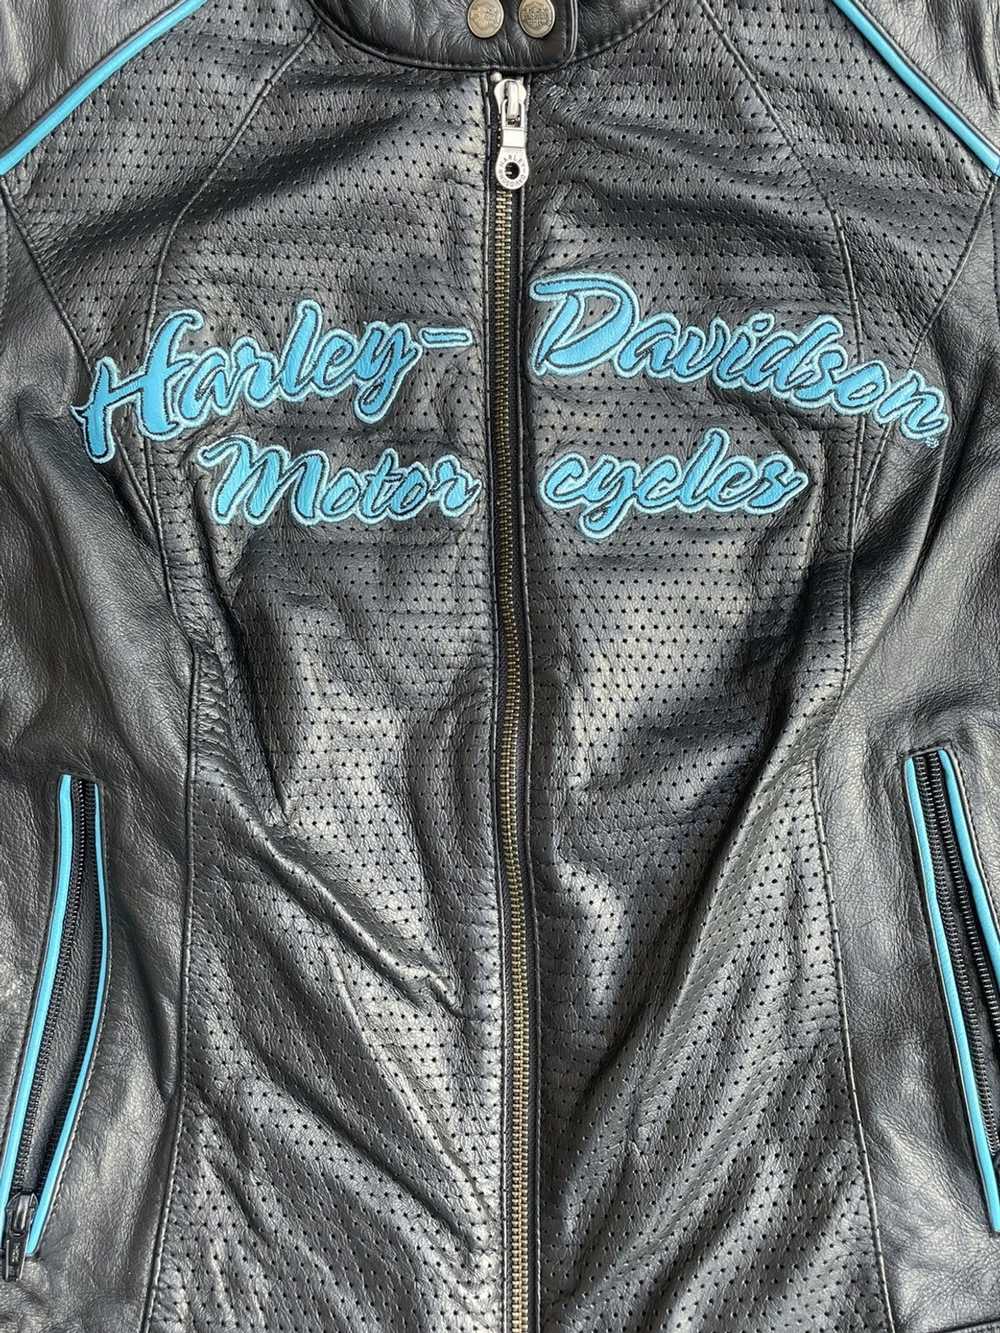 Genuine Leather × Harley Davidson × Vintage Vinta… - image 2